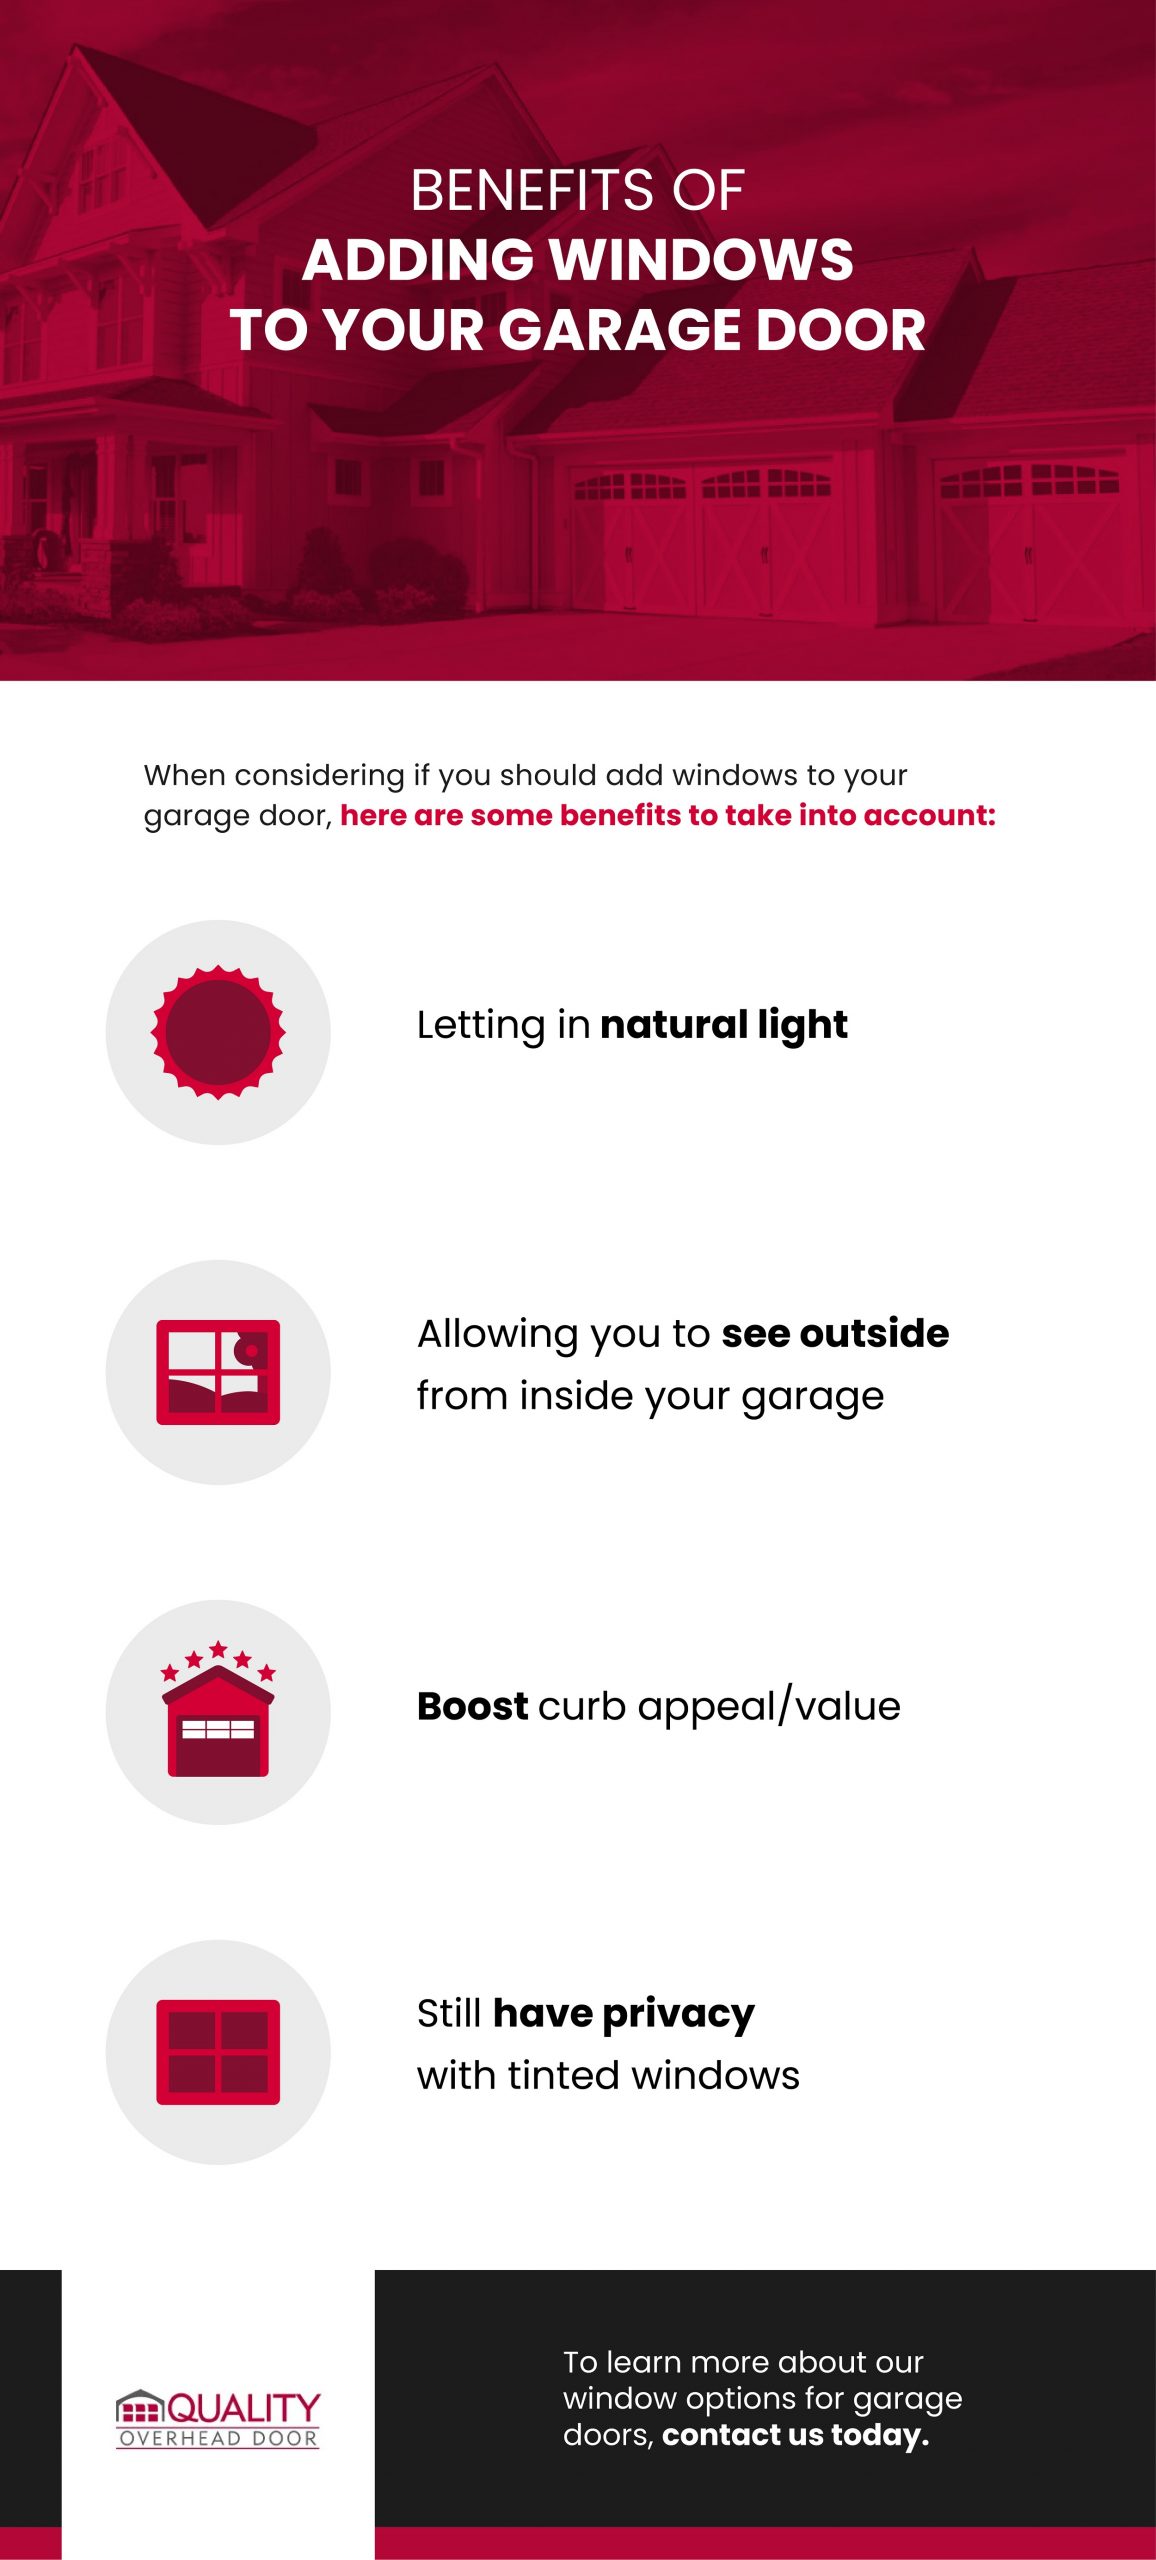 Benefits of Adding Windows to Your Garage Door